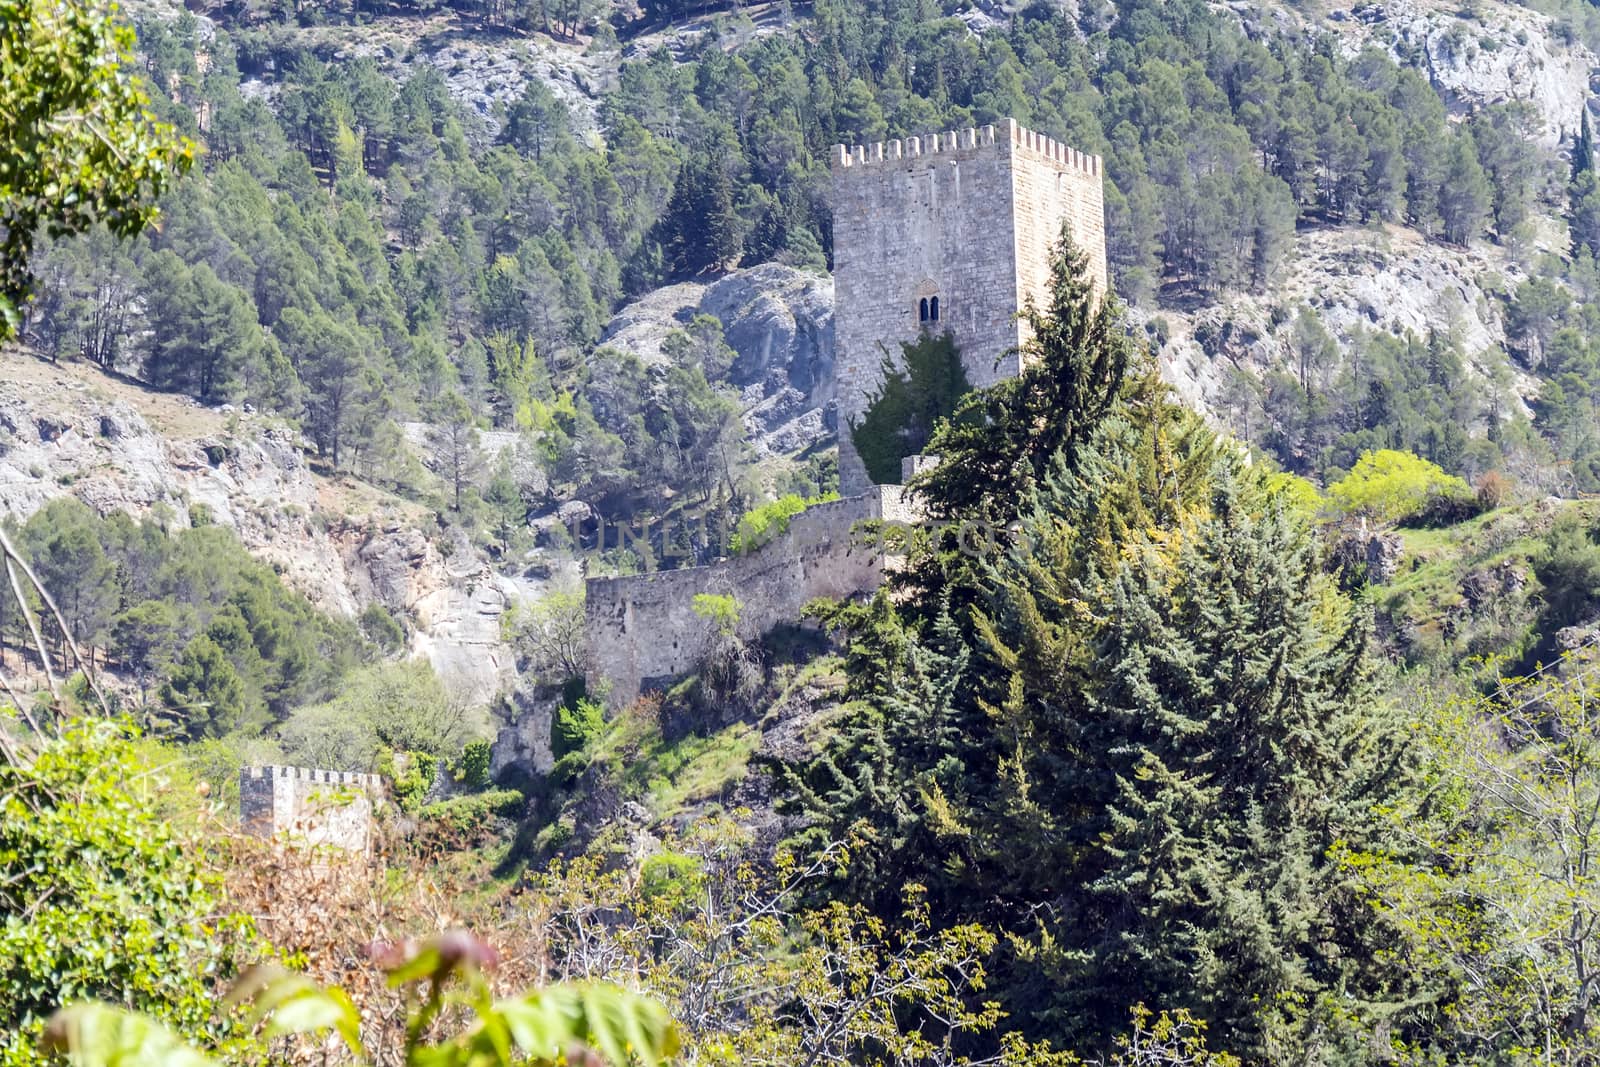 Yedra castle in Cazorla, Jaen, Spain by max8xam